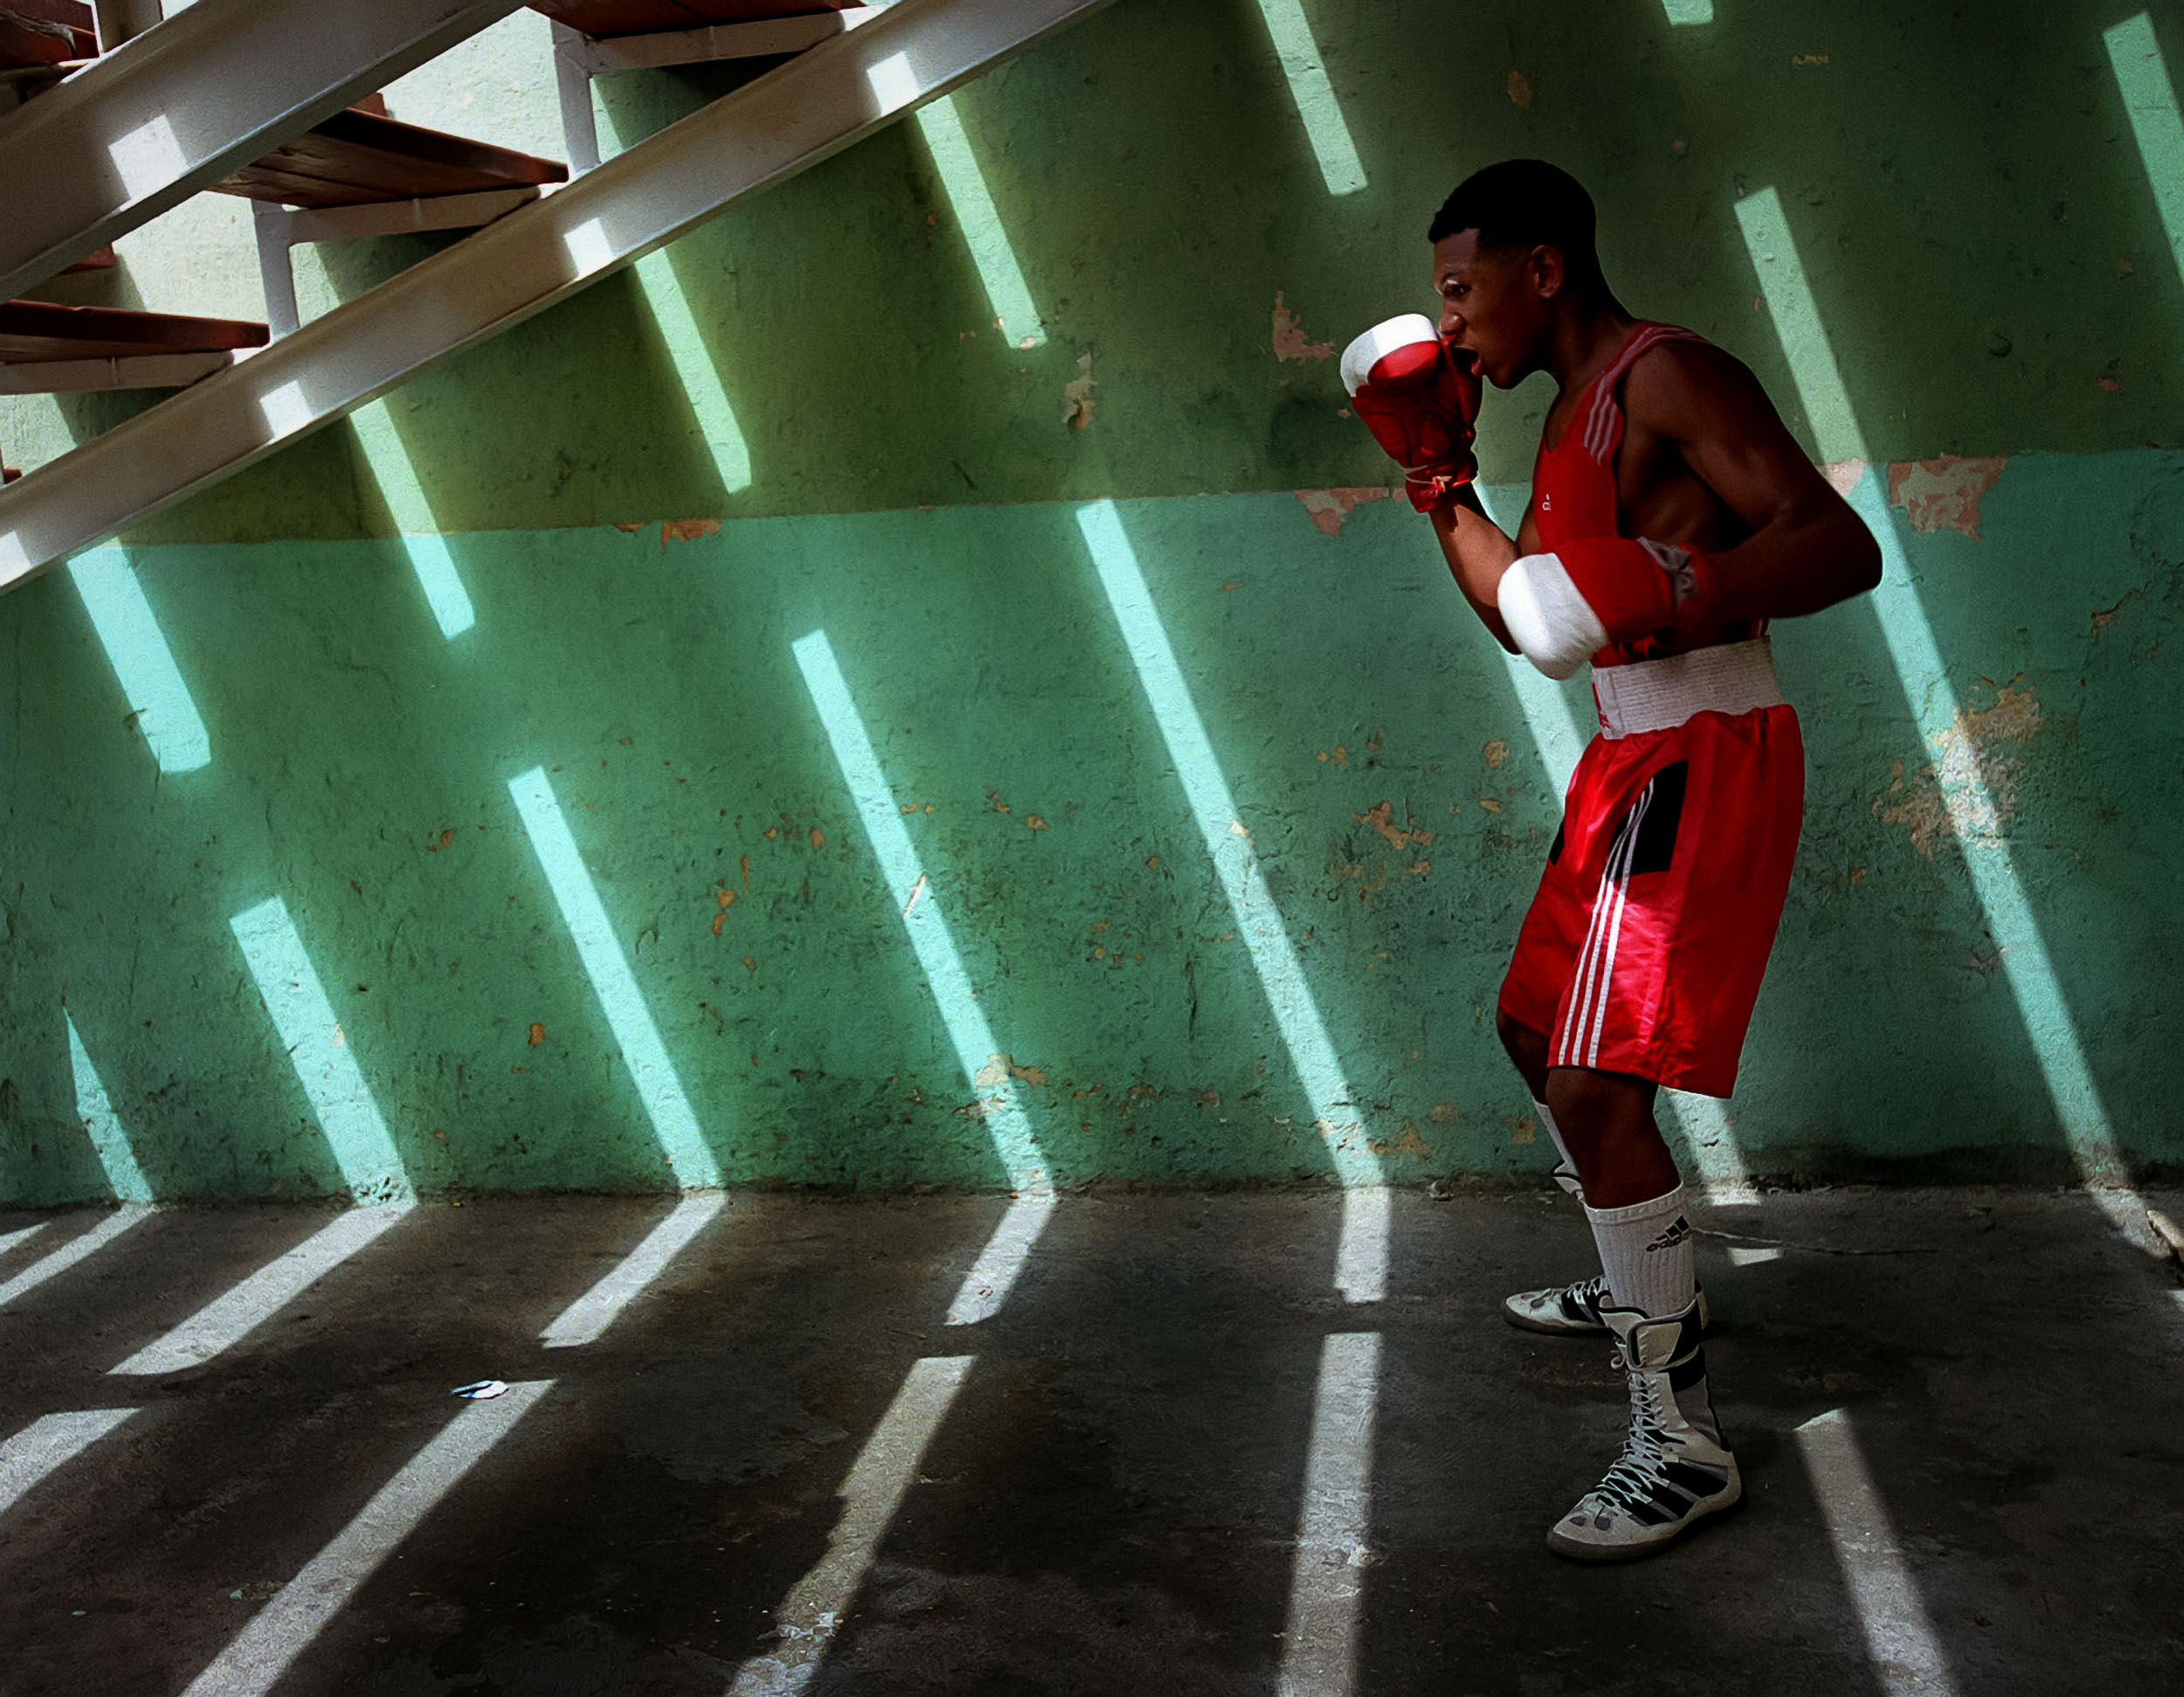 Boxing-Cuba-Havana-gym-02-web.JPG